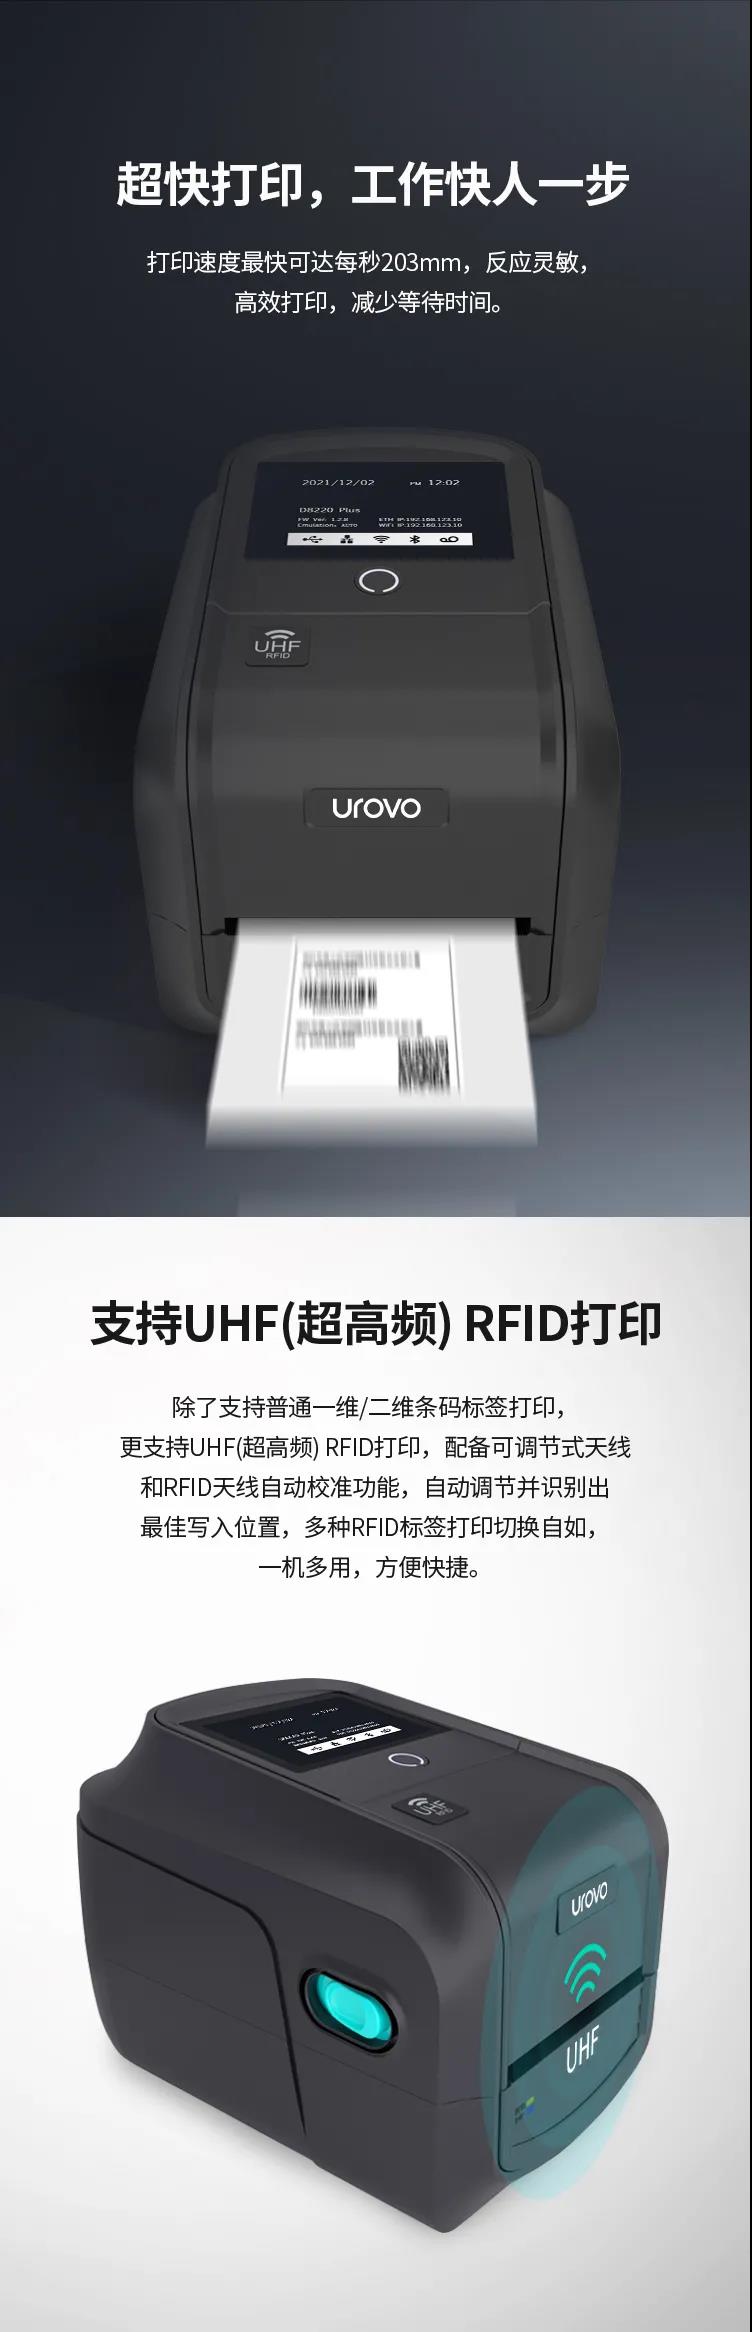 优博讯首款RFID打印机，它来了!